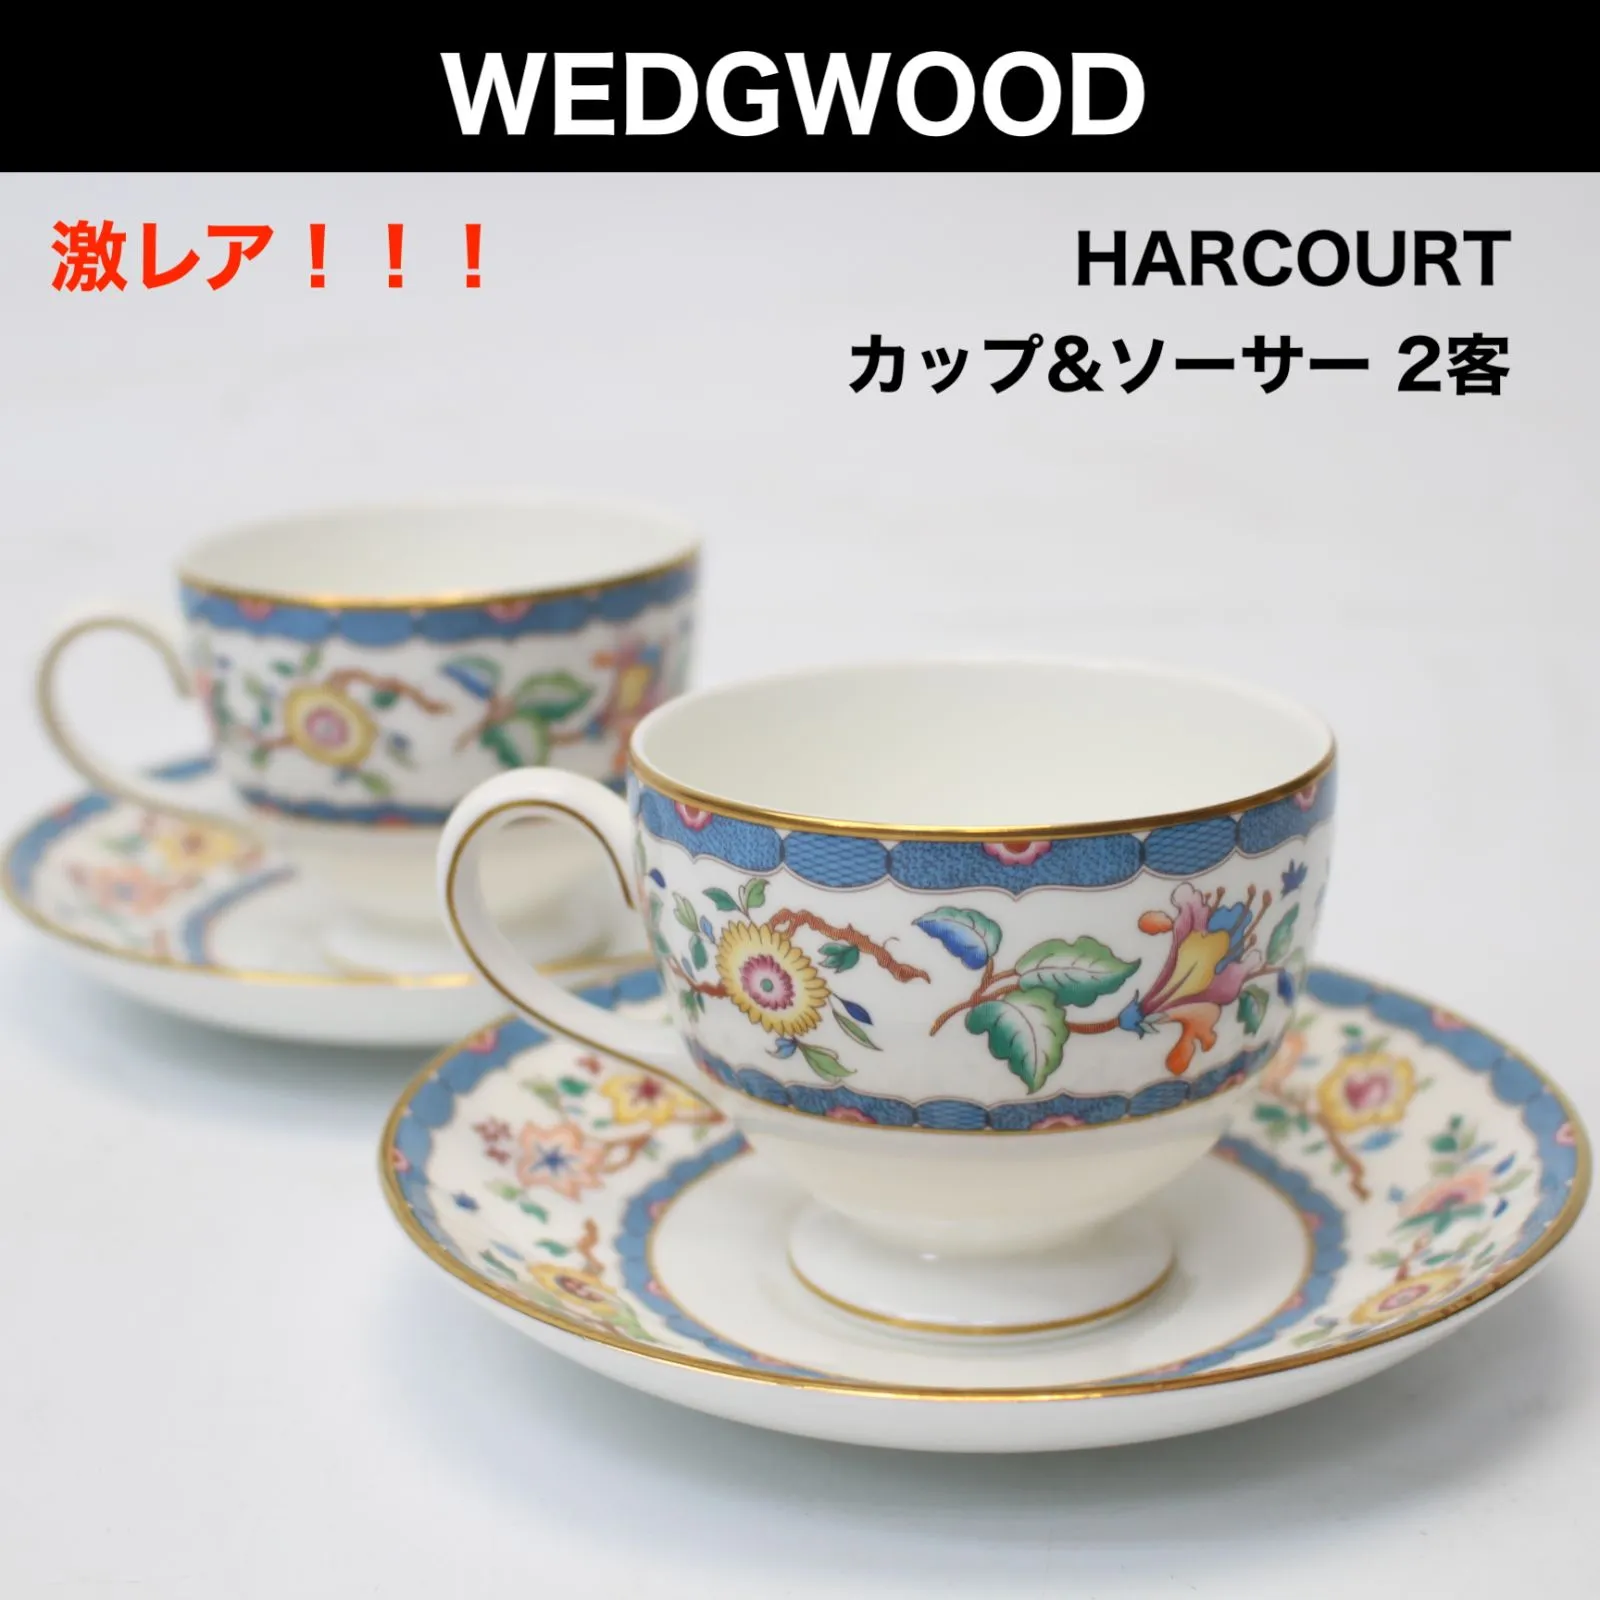 東京都調布市にて ウェッジウッド カップ&ソーサー 2客セット HARCOURT（HUNTINGDON）  を出張買取させて頂きました。